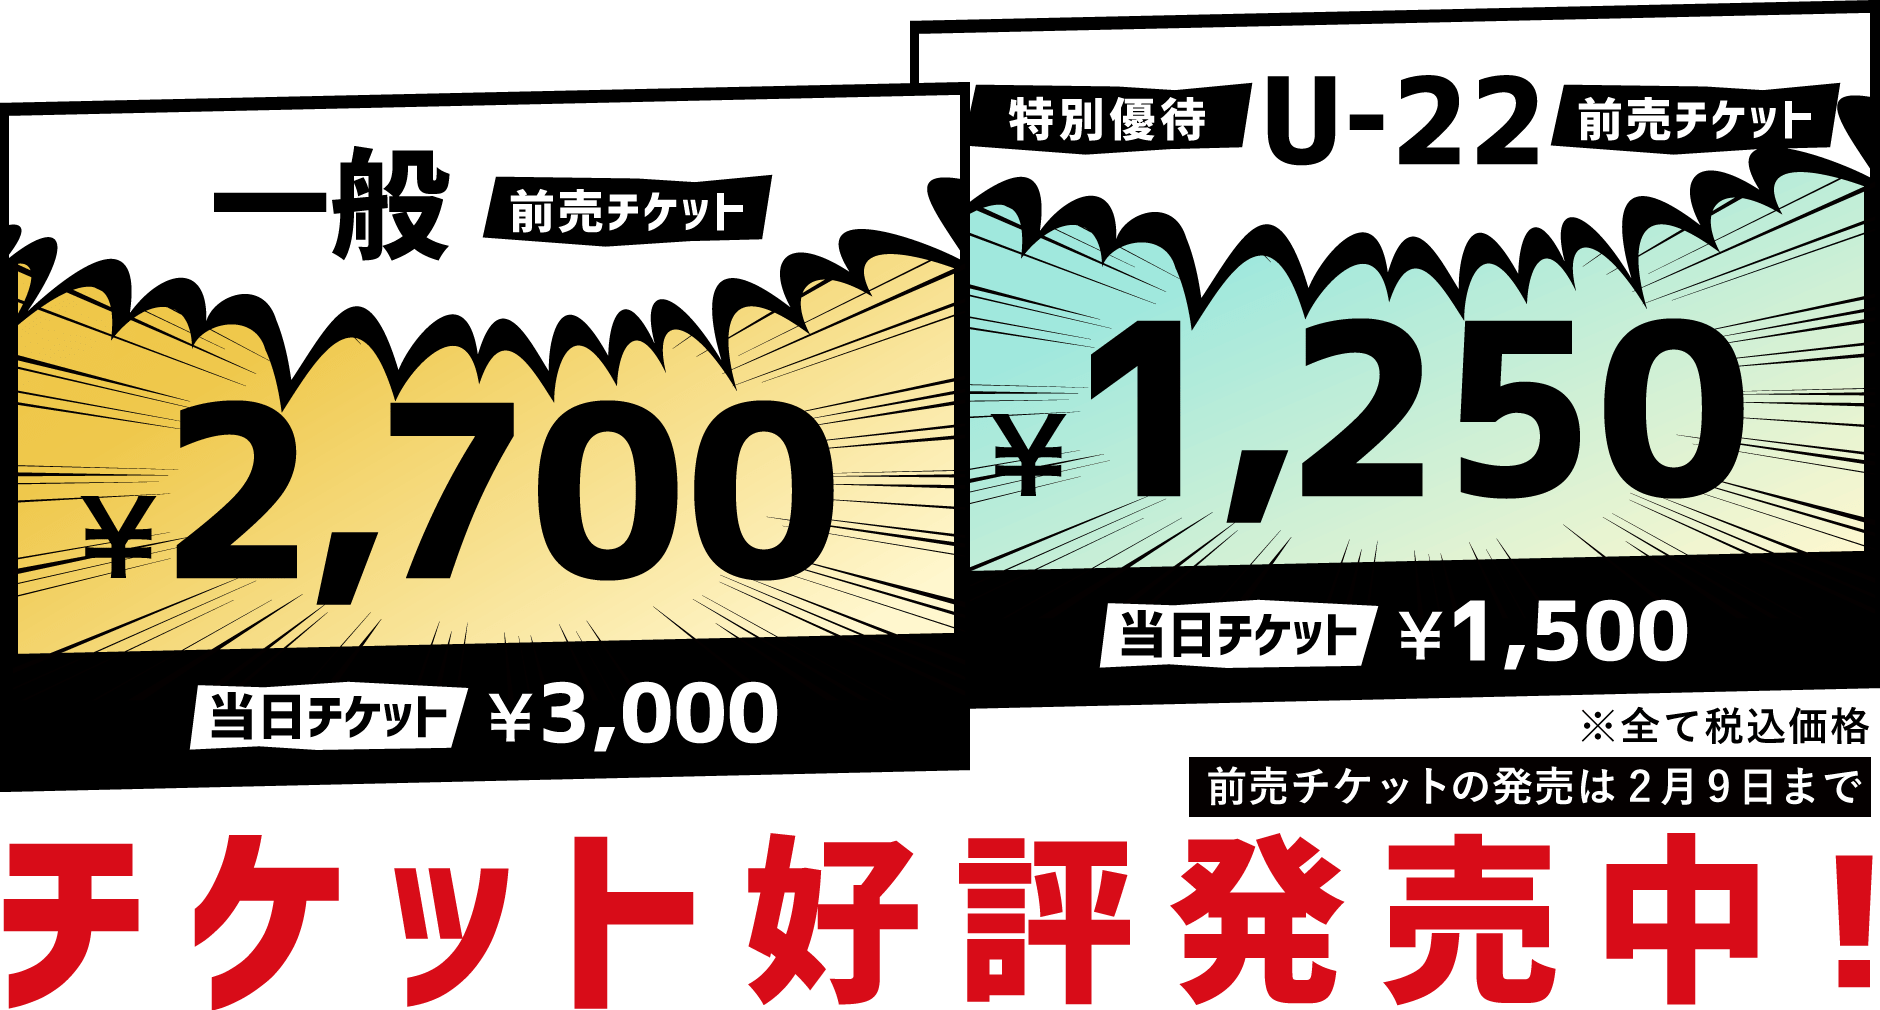 チケット情報 | 大阪オートメッセ2024